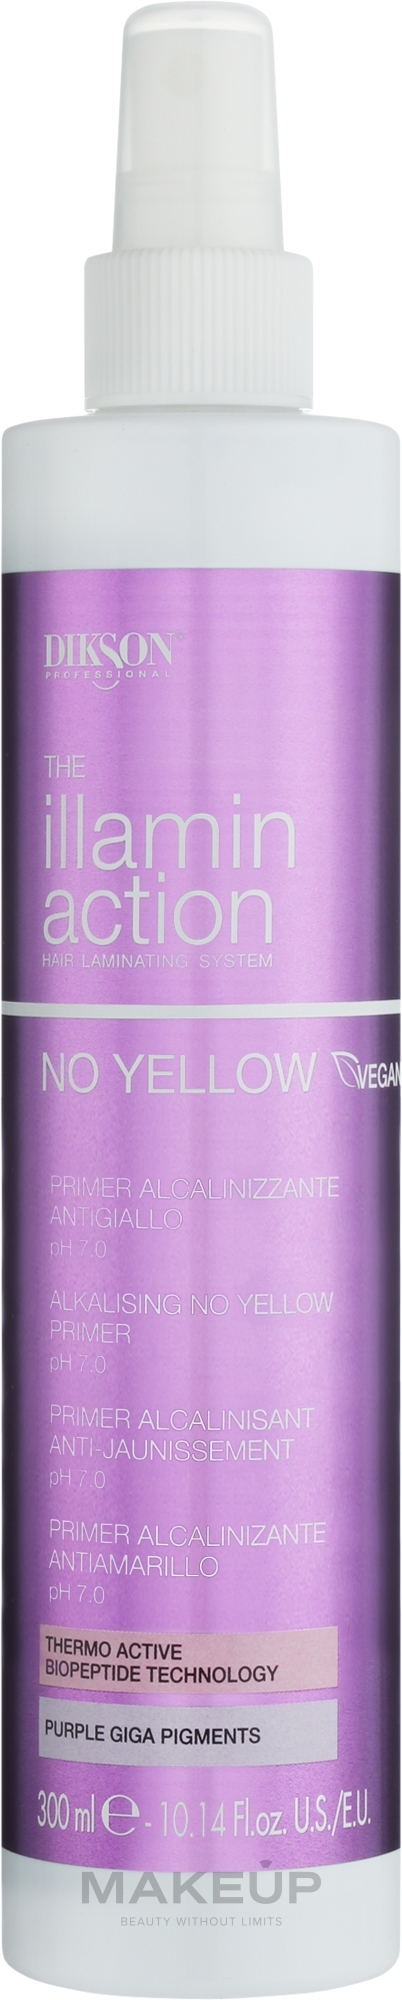 Primer neutralizujący zażółcenia do laminowania włosów - Dikson Illaminaction Alkalising No Yellow Primer pH 7.0 — Zdjęcie 300 ml